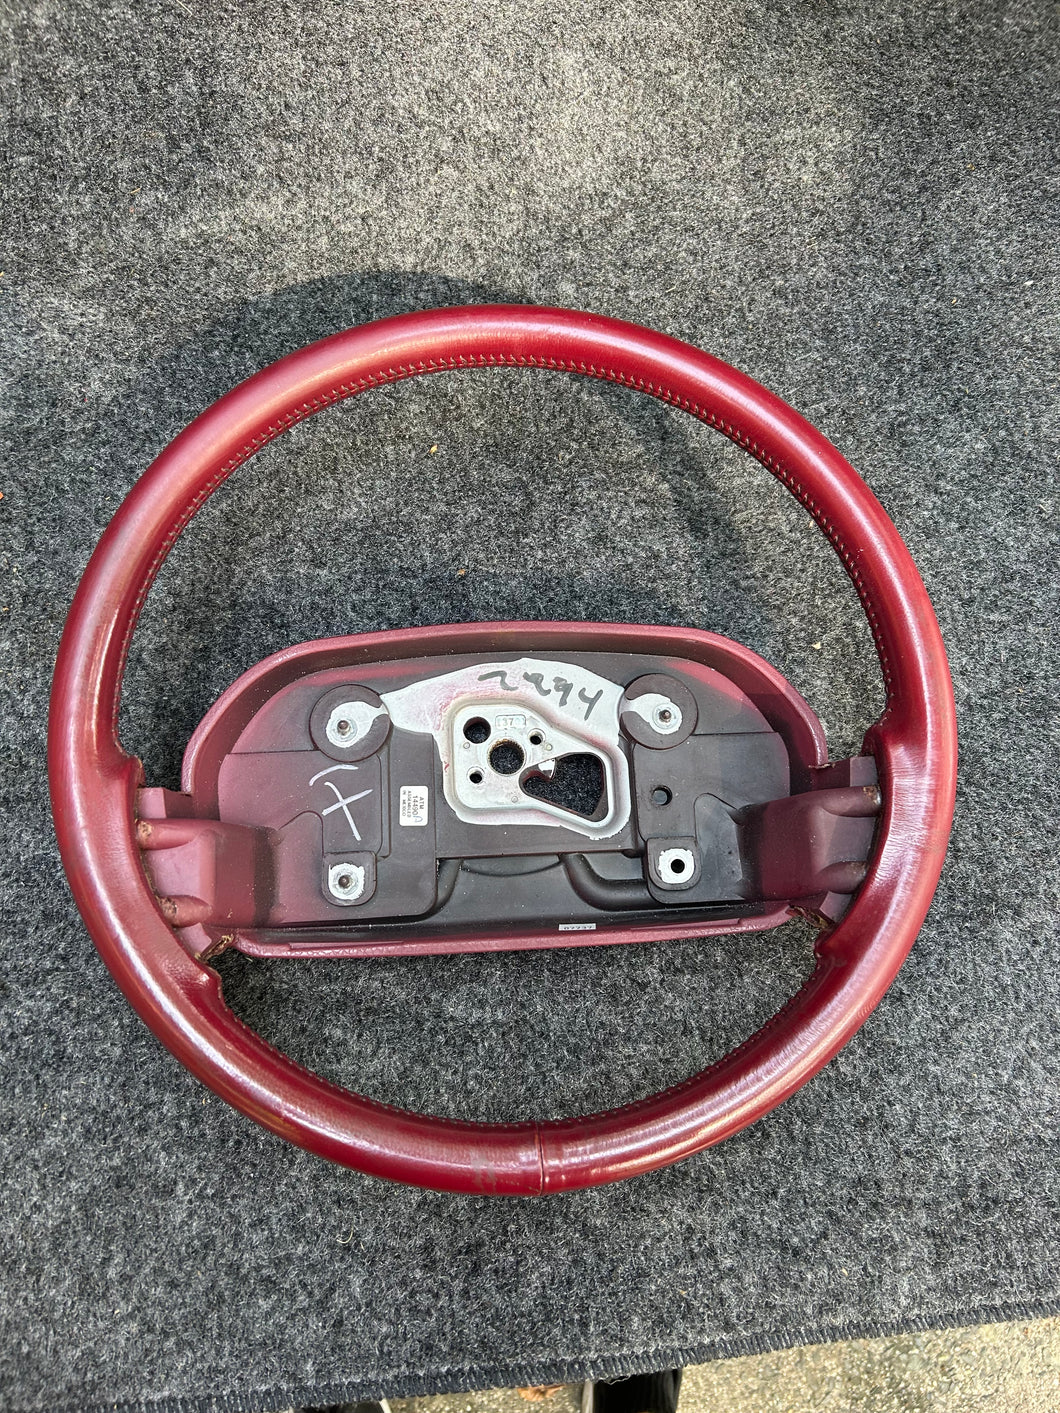 Used 1990 steering wheel